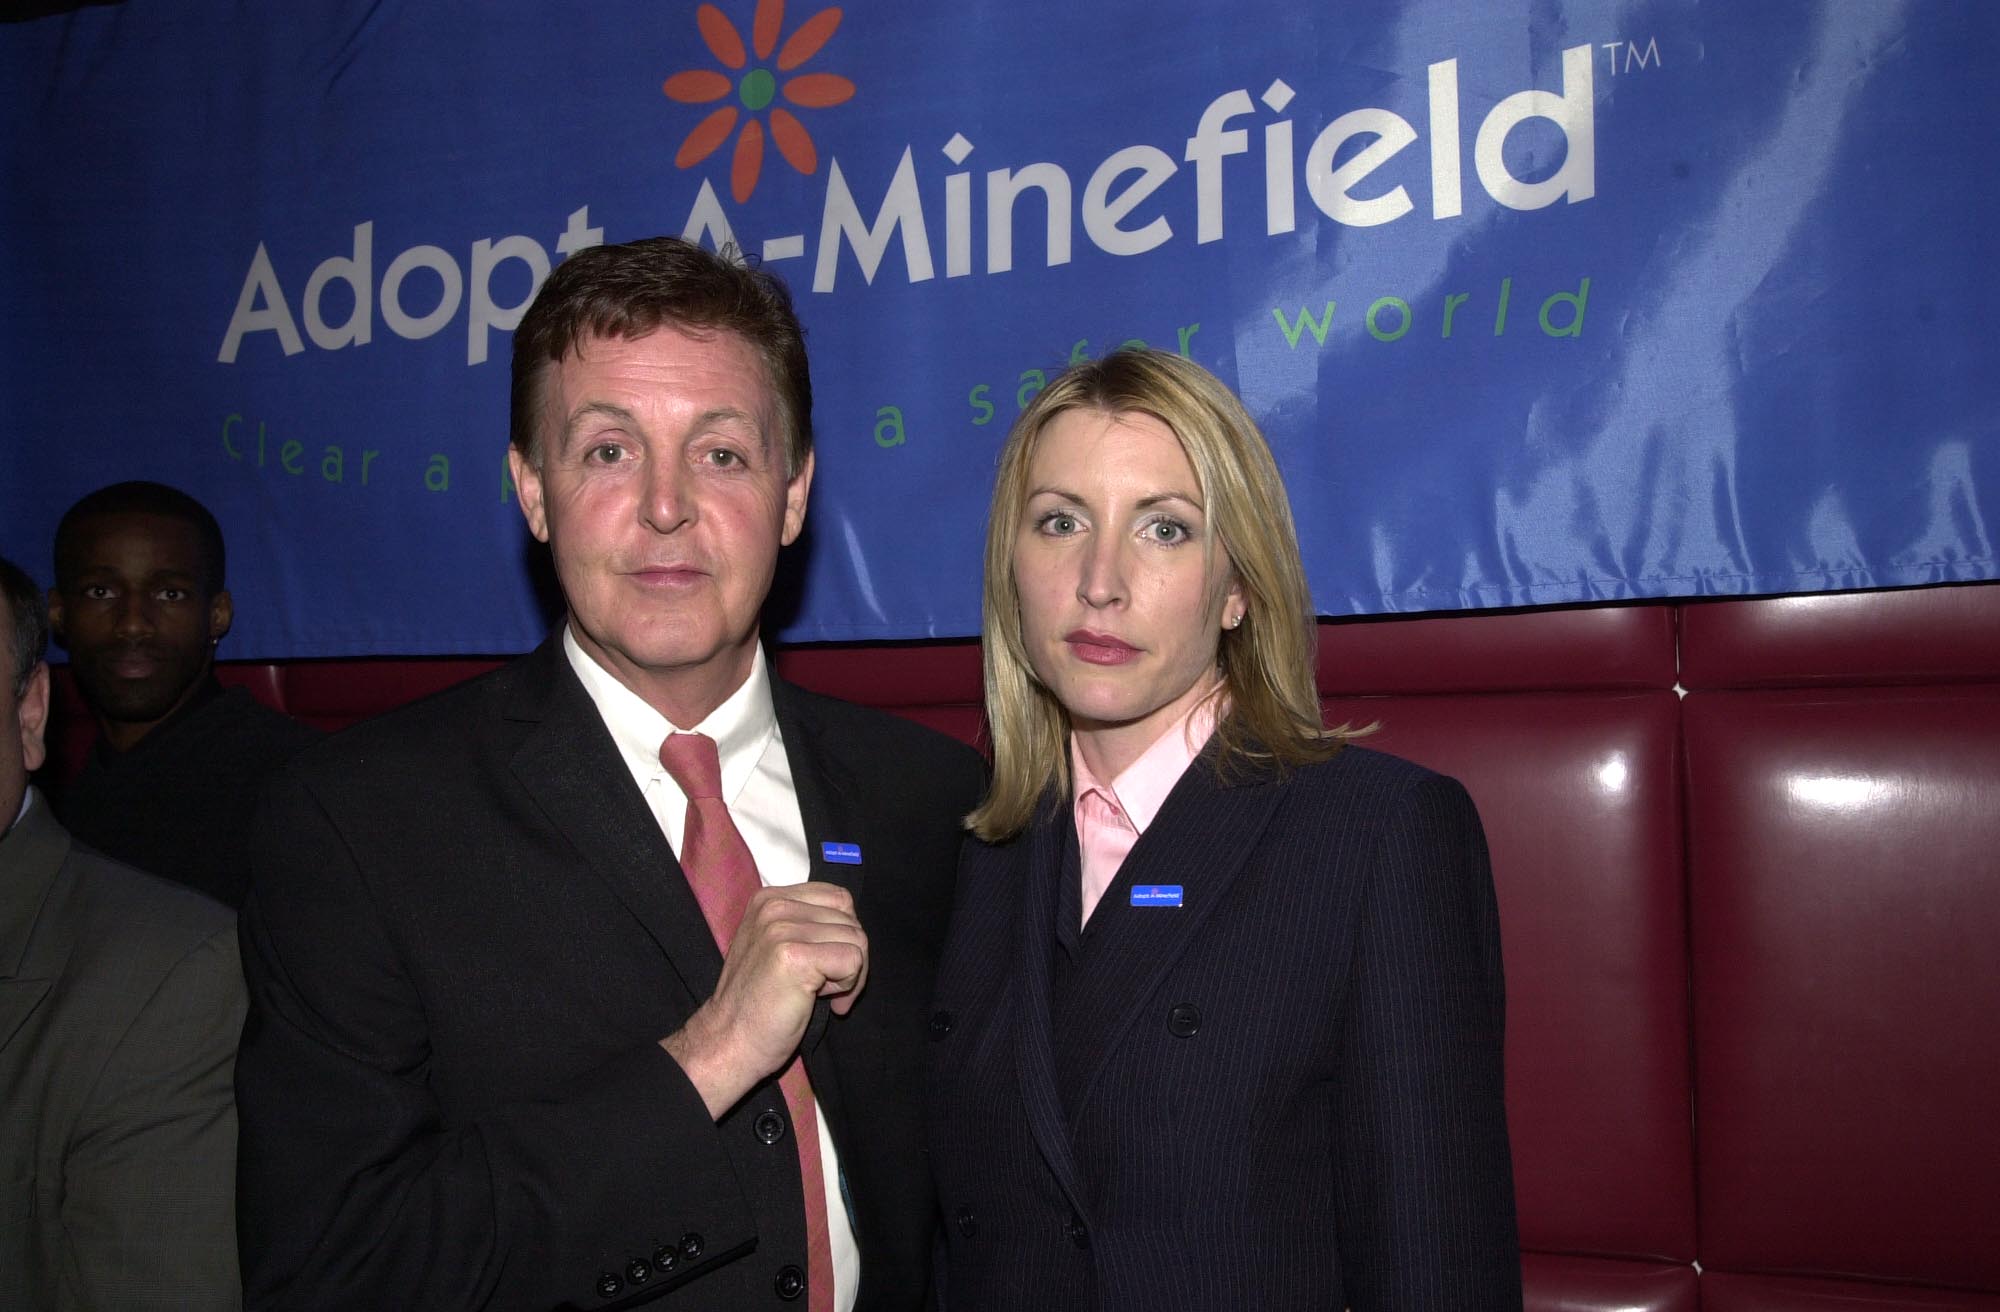 Paul McCartney und Heather Mills bei der Benefizveranstaltung "Adopt A Minefield" am 20. April 2001 | Quelle: Getty Images